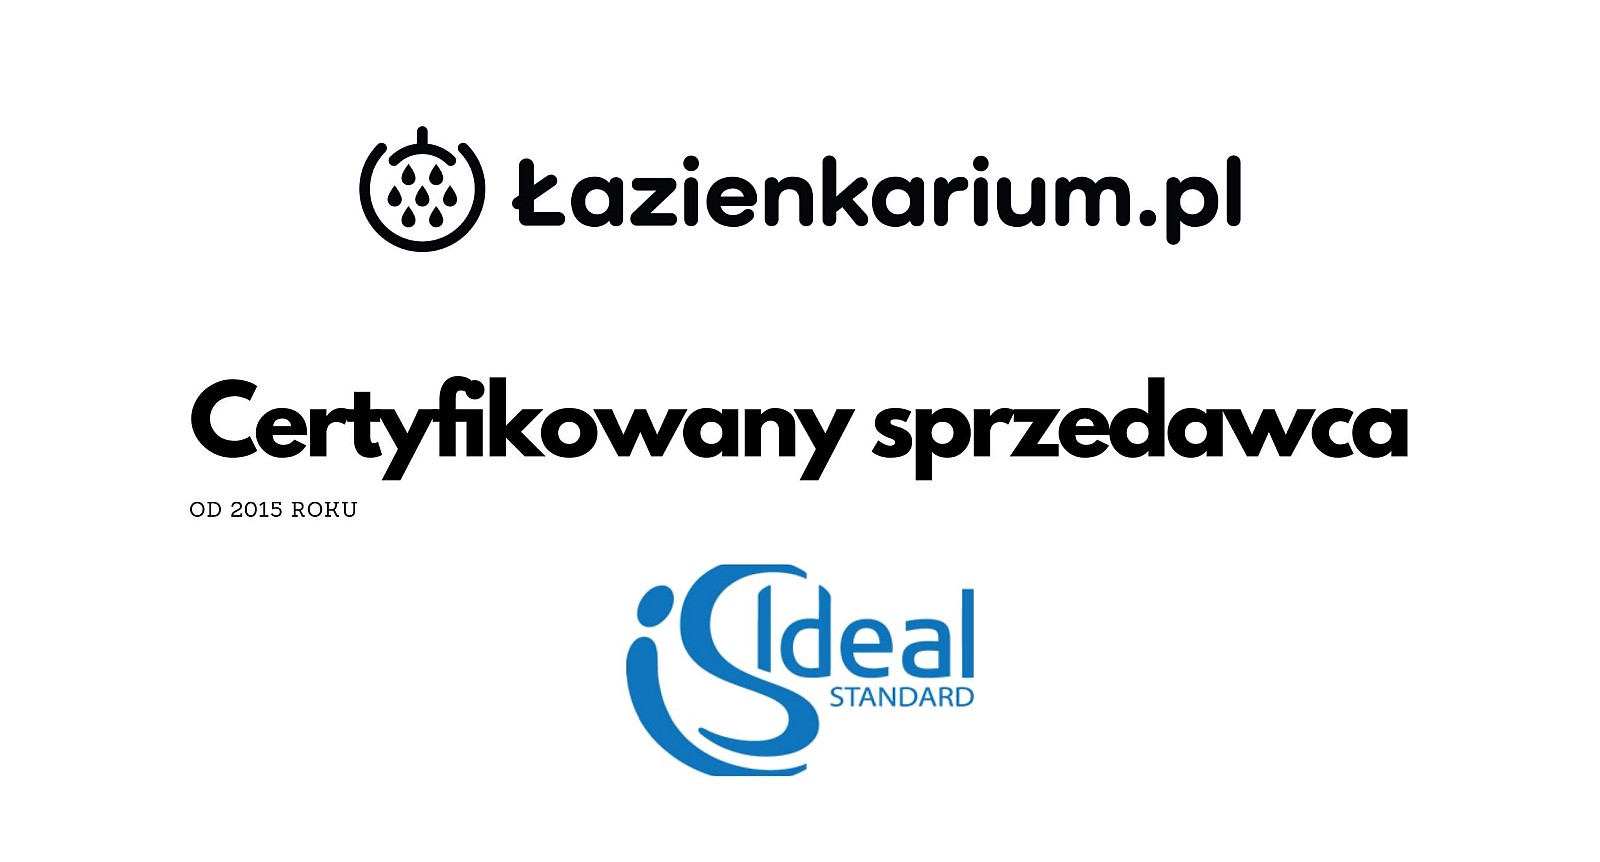 Ideal Standard Sklep Dystrybutor - Jakość Co to za Firma? Kraków Warszawa Tarnów Poznań - lazienkarium.pl